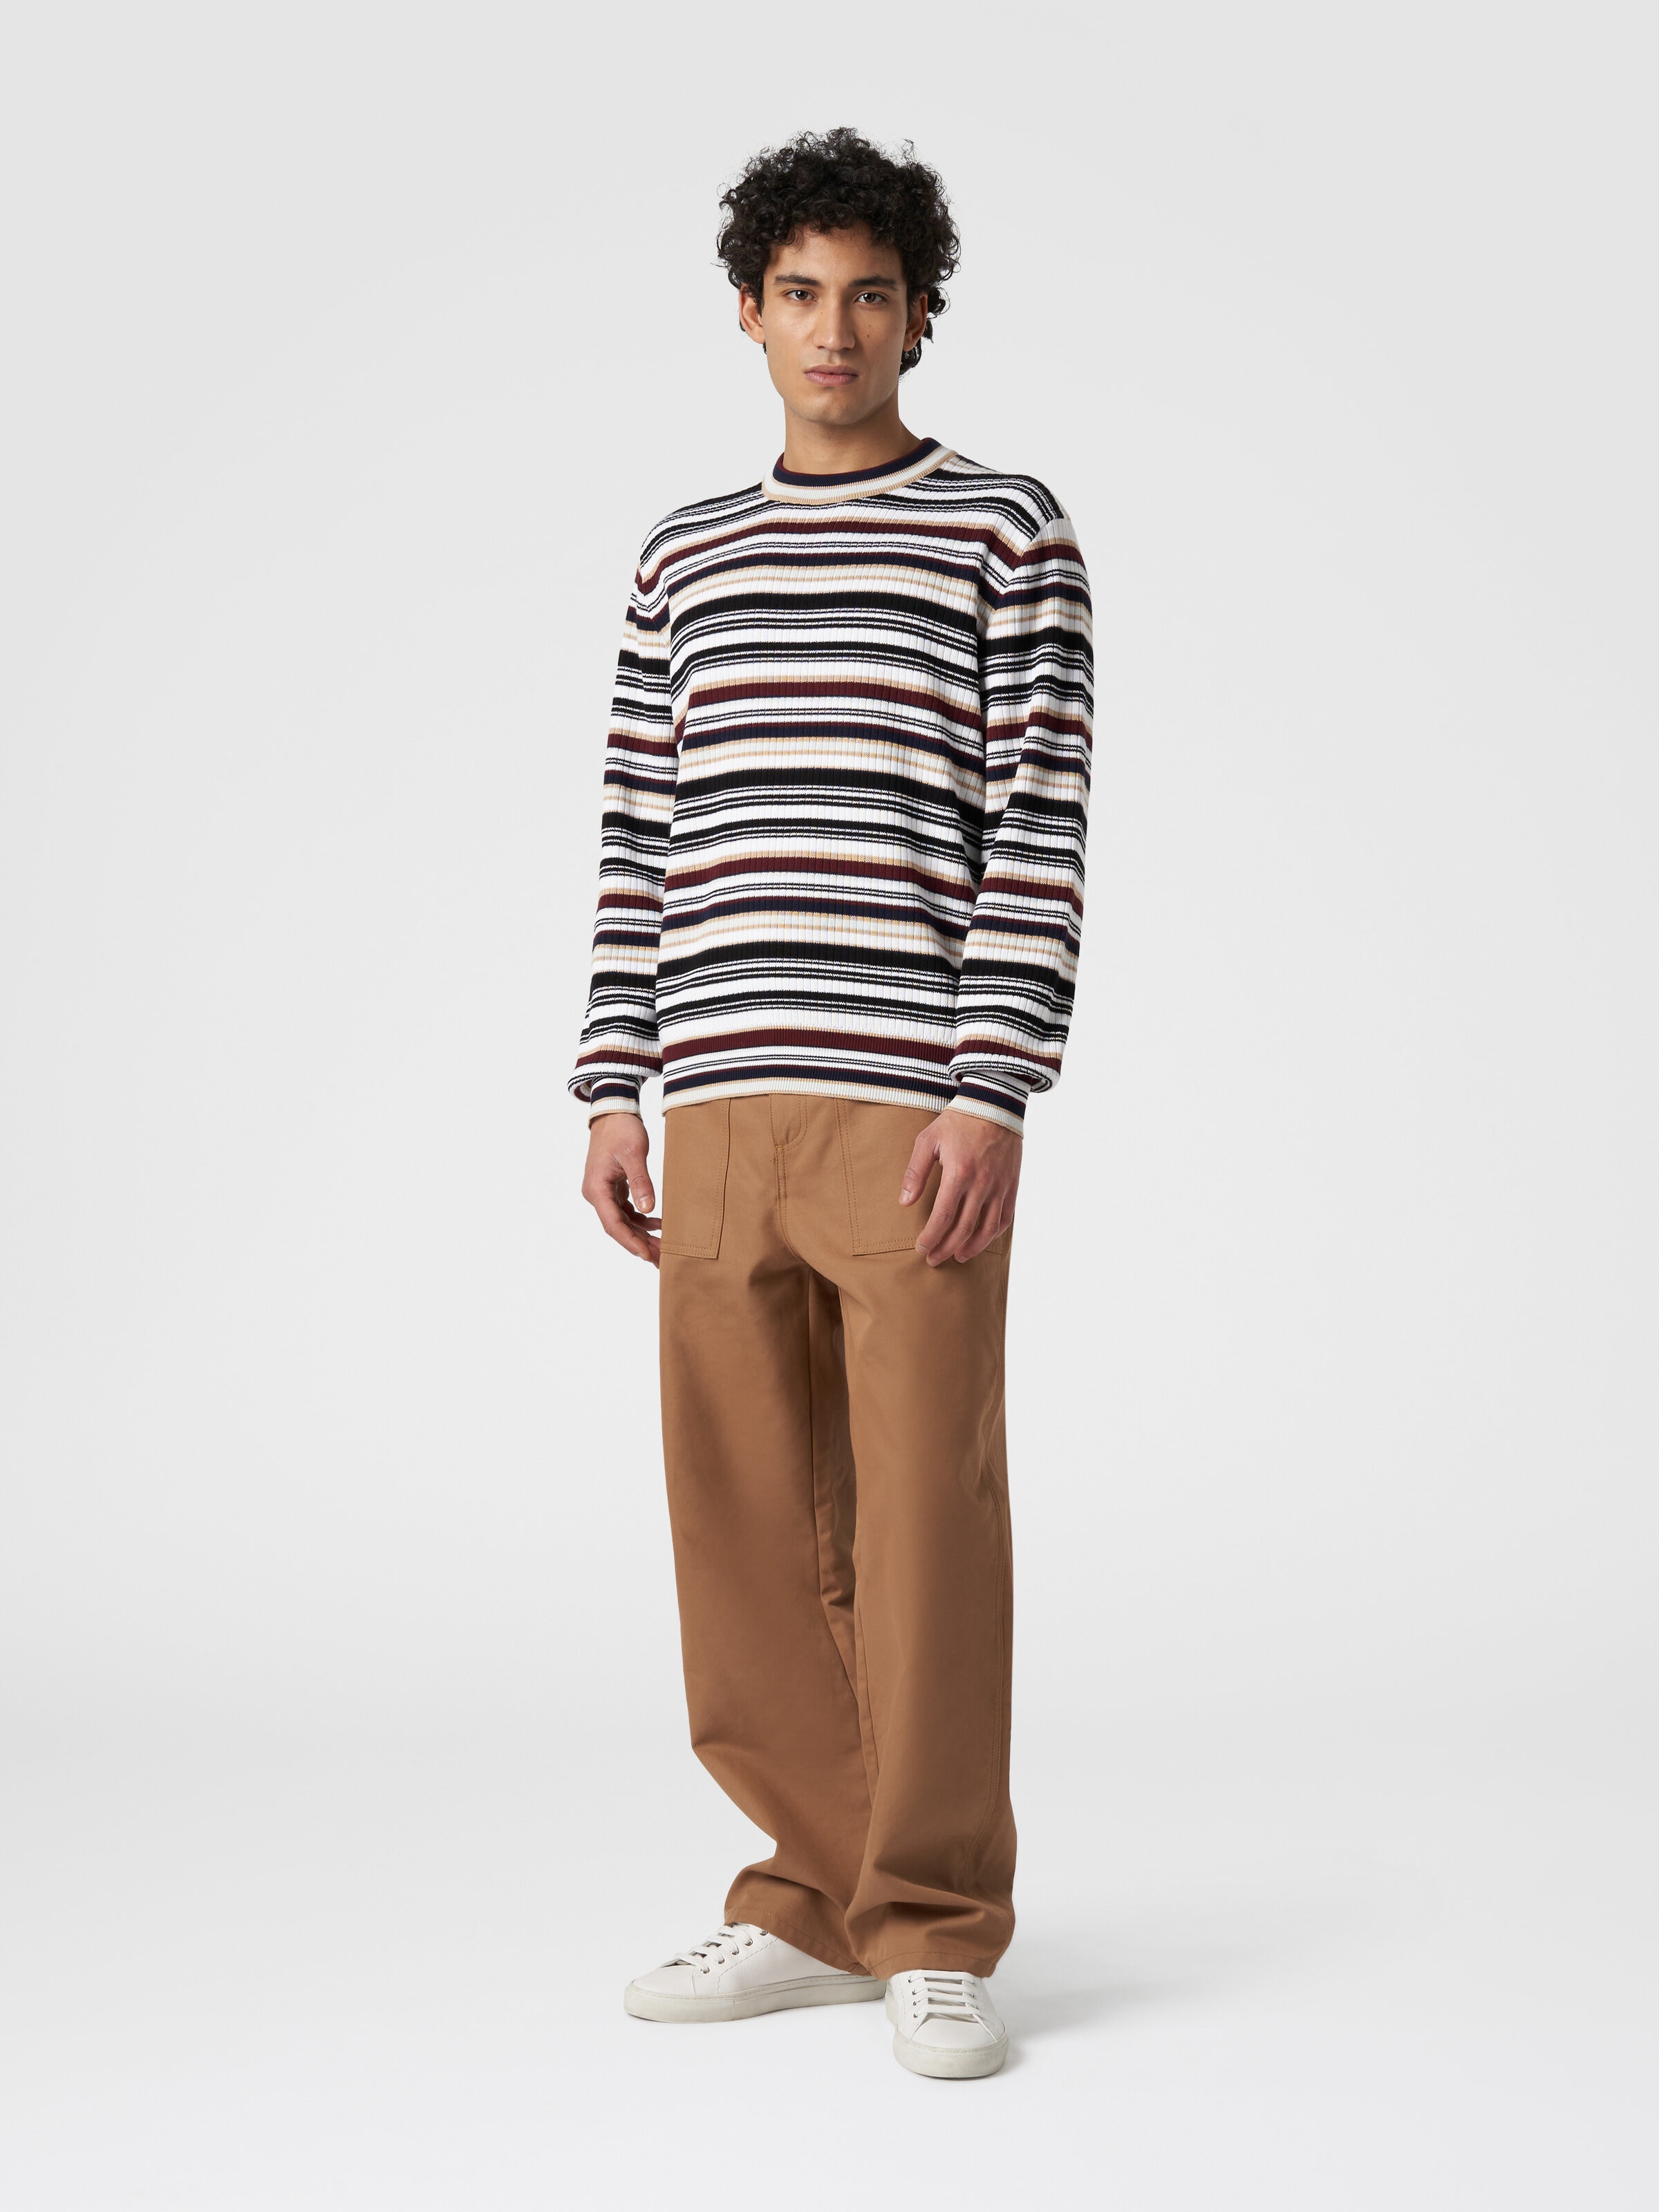 Crew-neck pullover in striped cotton, Multicoloured  - 1